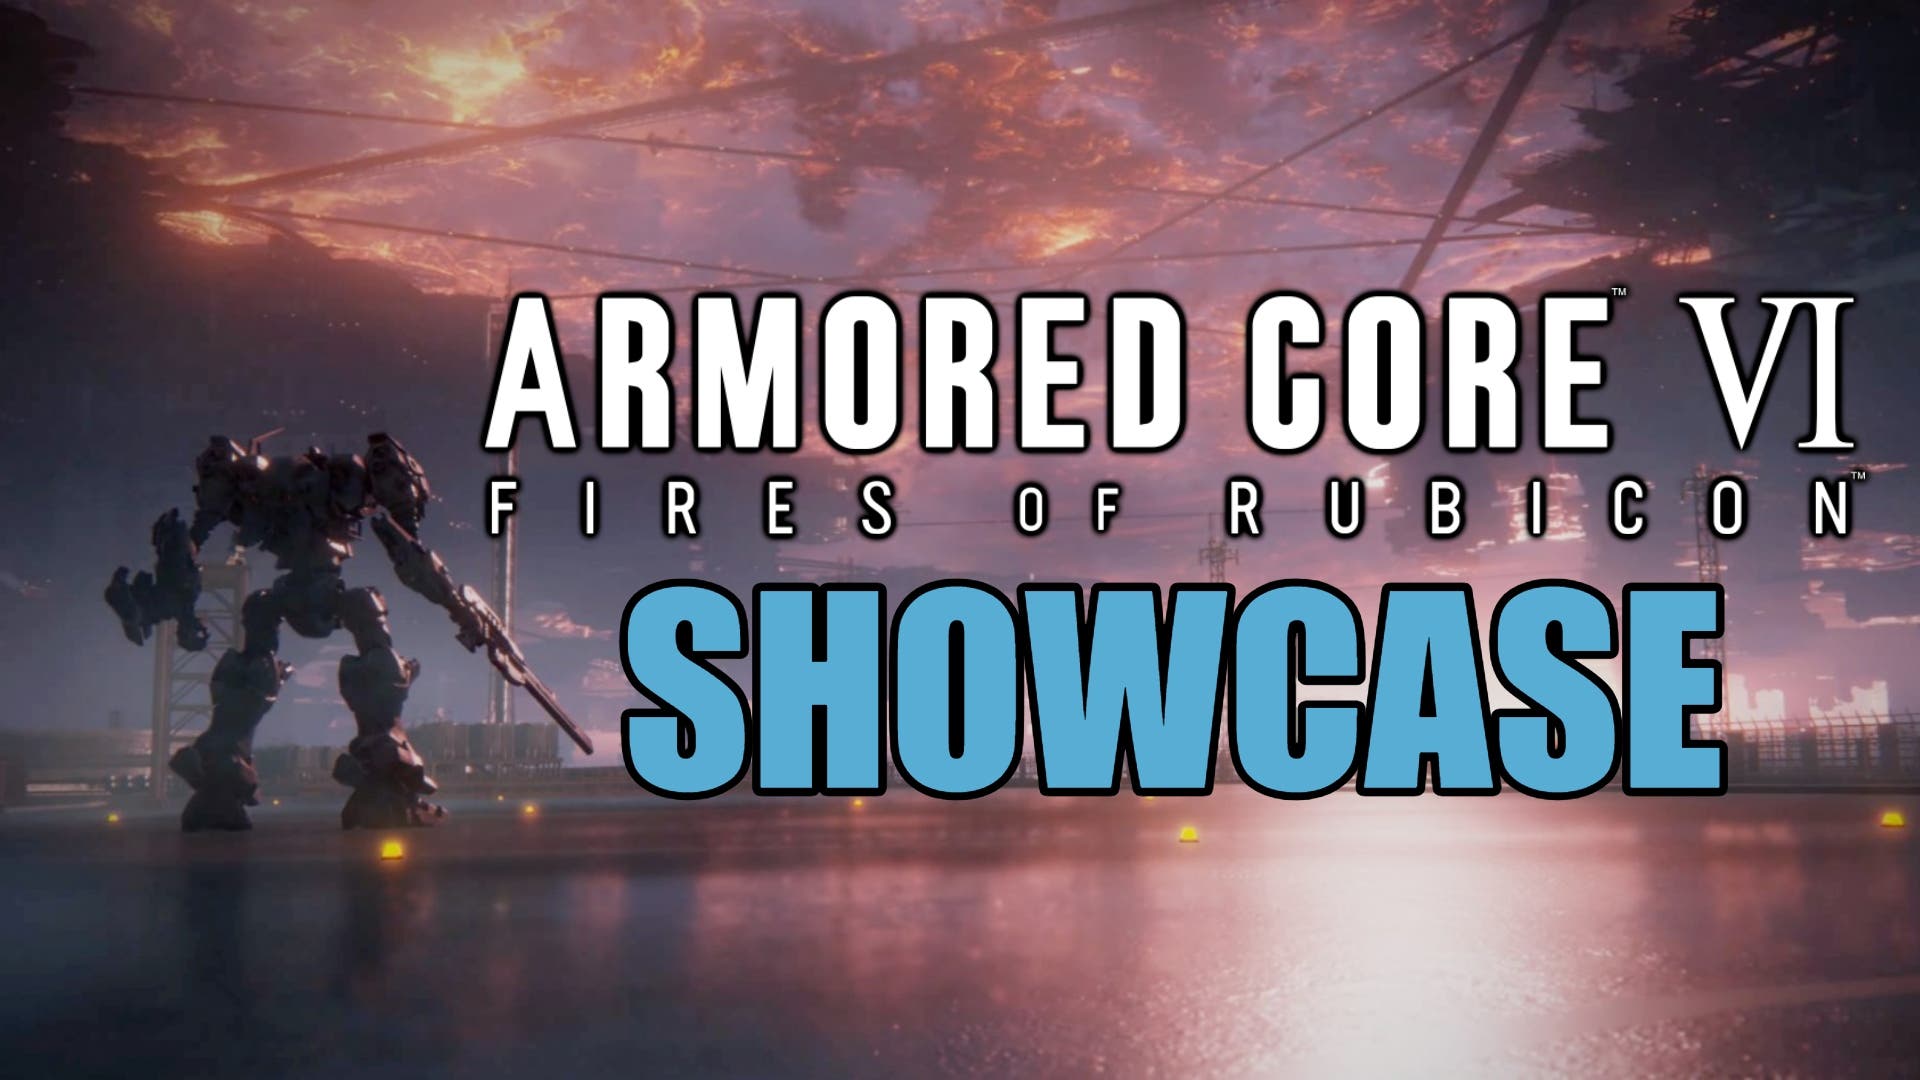 Estos son los requisitos de Armored Core VI: Fires of Rubicon en PC